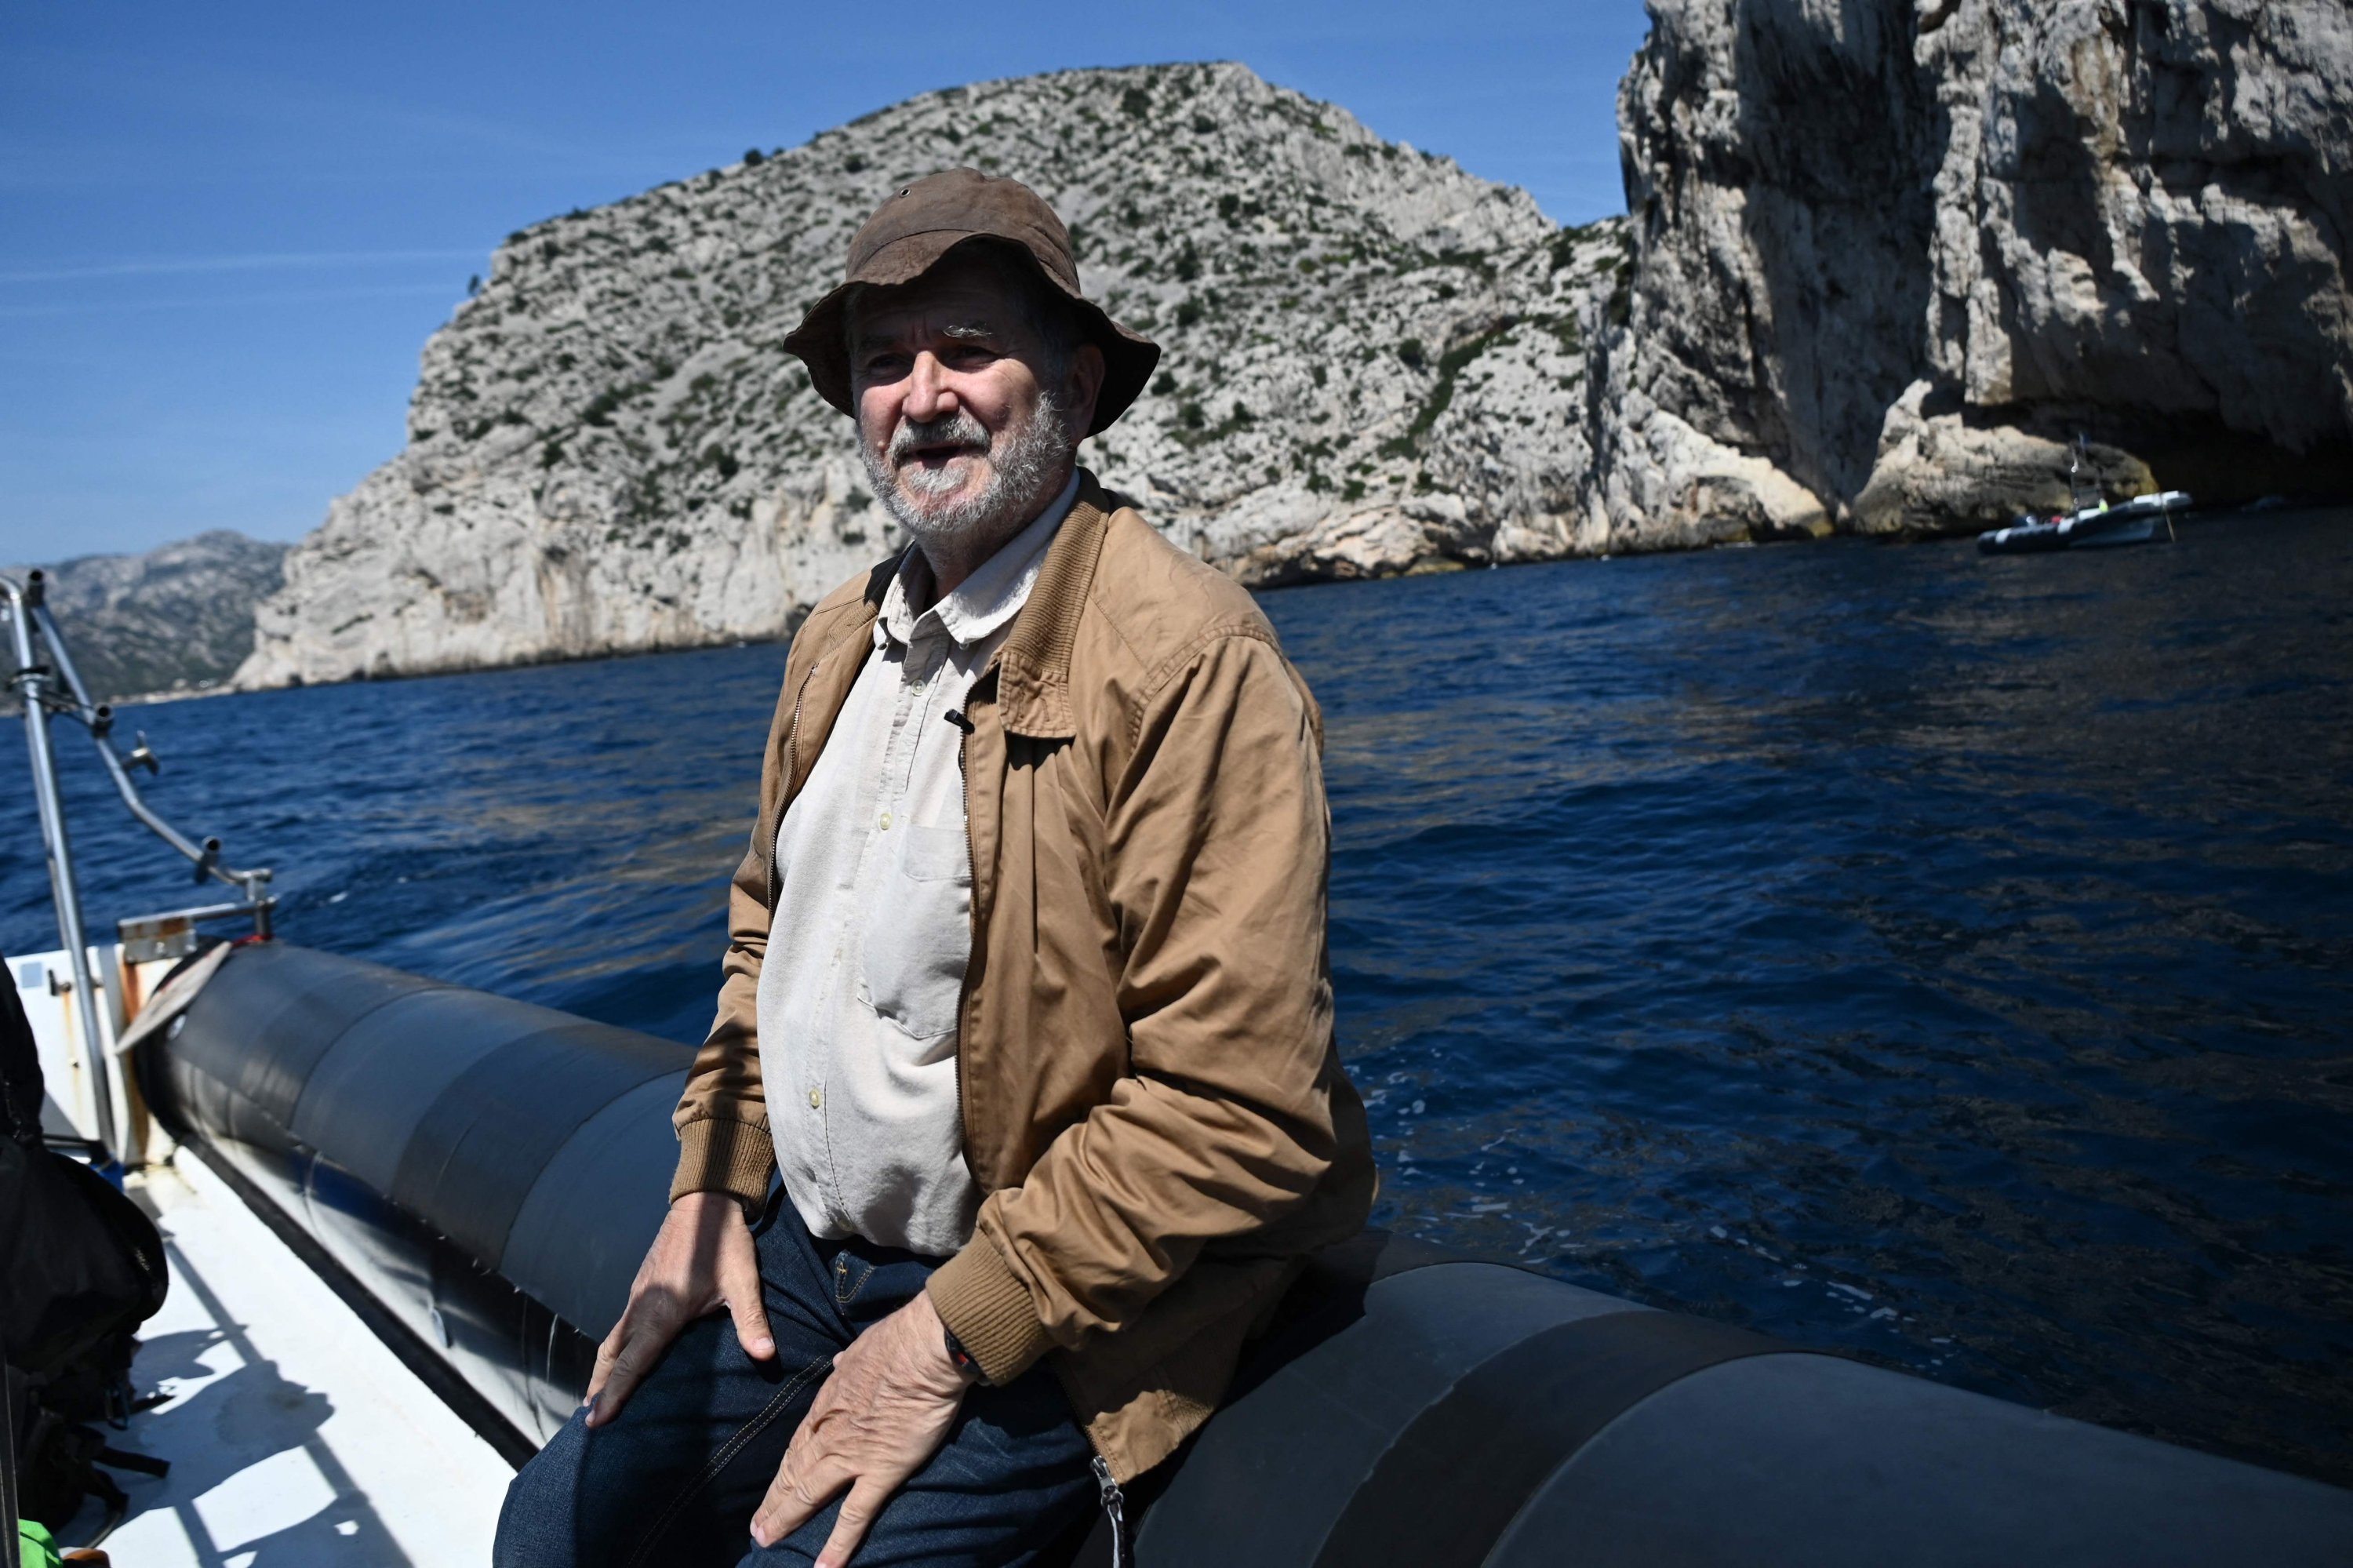 Michel Olive, seorang arkeolog, menjawab pertanyaan wartawan saat dia berlayar menuju gua Cosquer di Marseille, Prancis selatan, 27 April 2022. (AFP Photo)